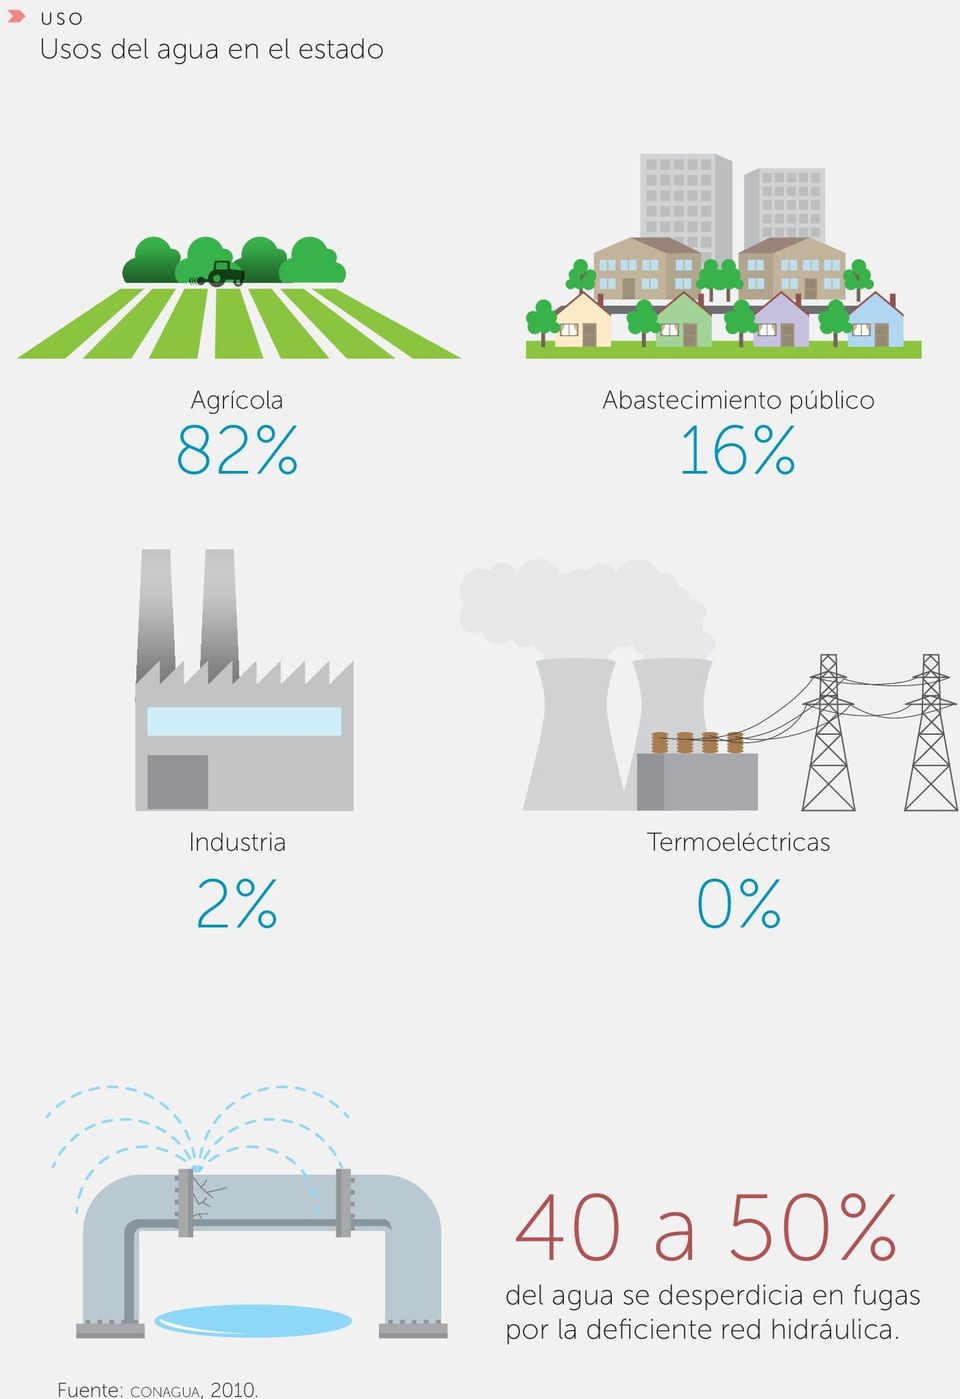 Termoeléctricas 2% 0% Fuente: CONAGUA, 2010.